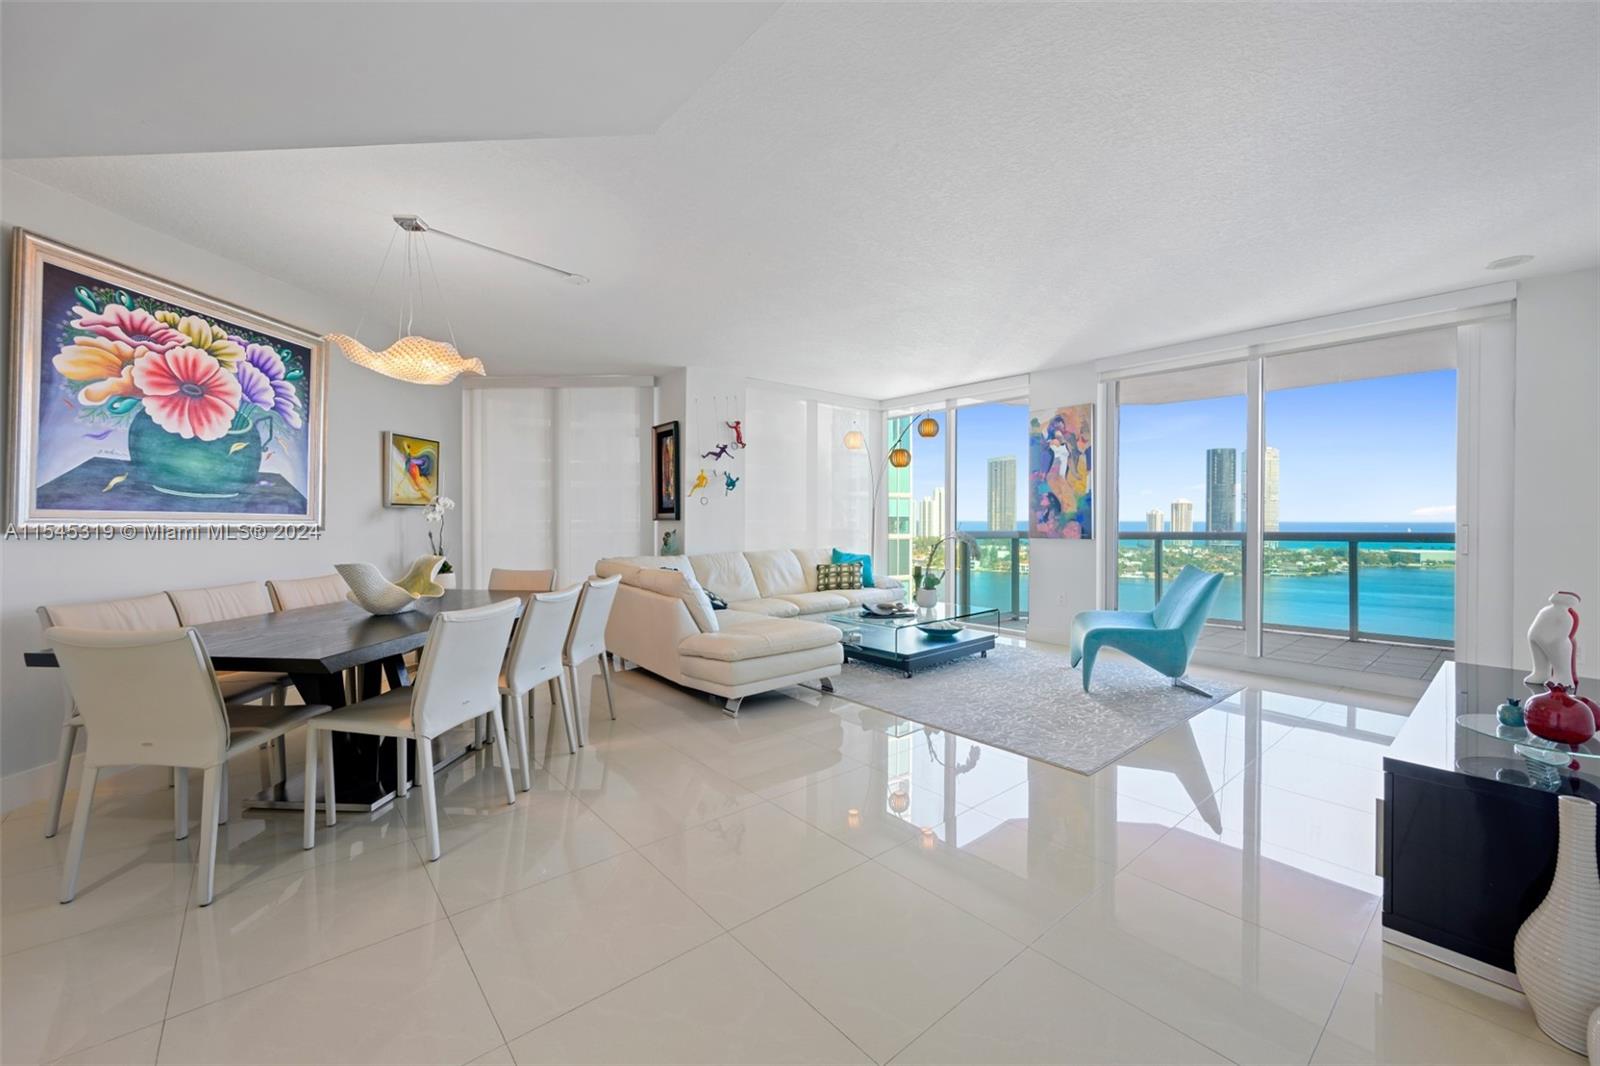 Property for Sale at 3370 Hidden Bay Dr 2412, Aventura, Miami-Dade County, Florida - Bedrooms: 2 
Bathrooms: 3  - $870,000